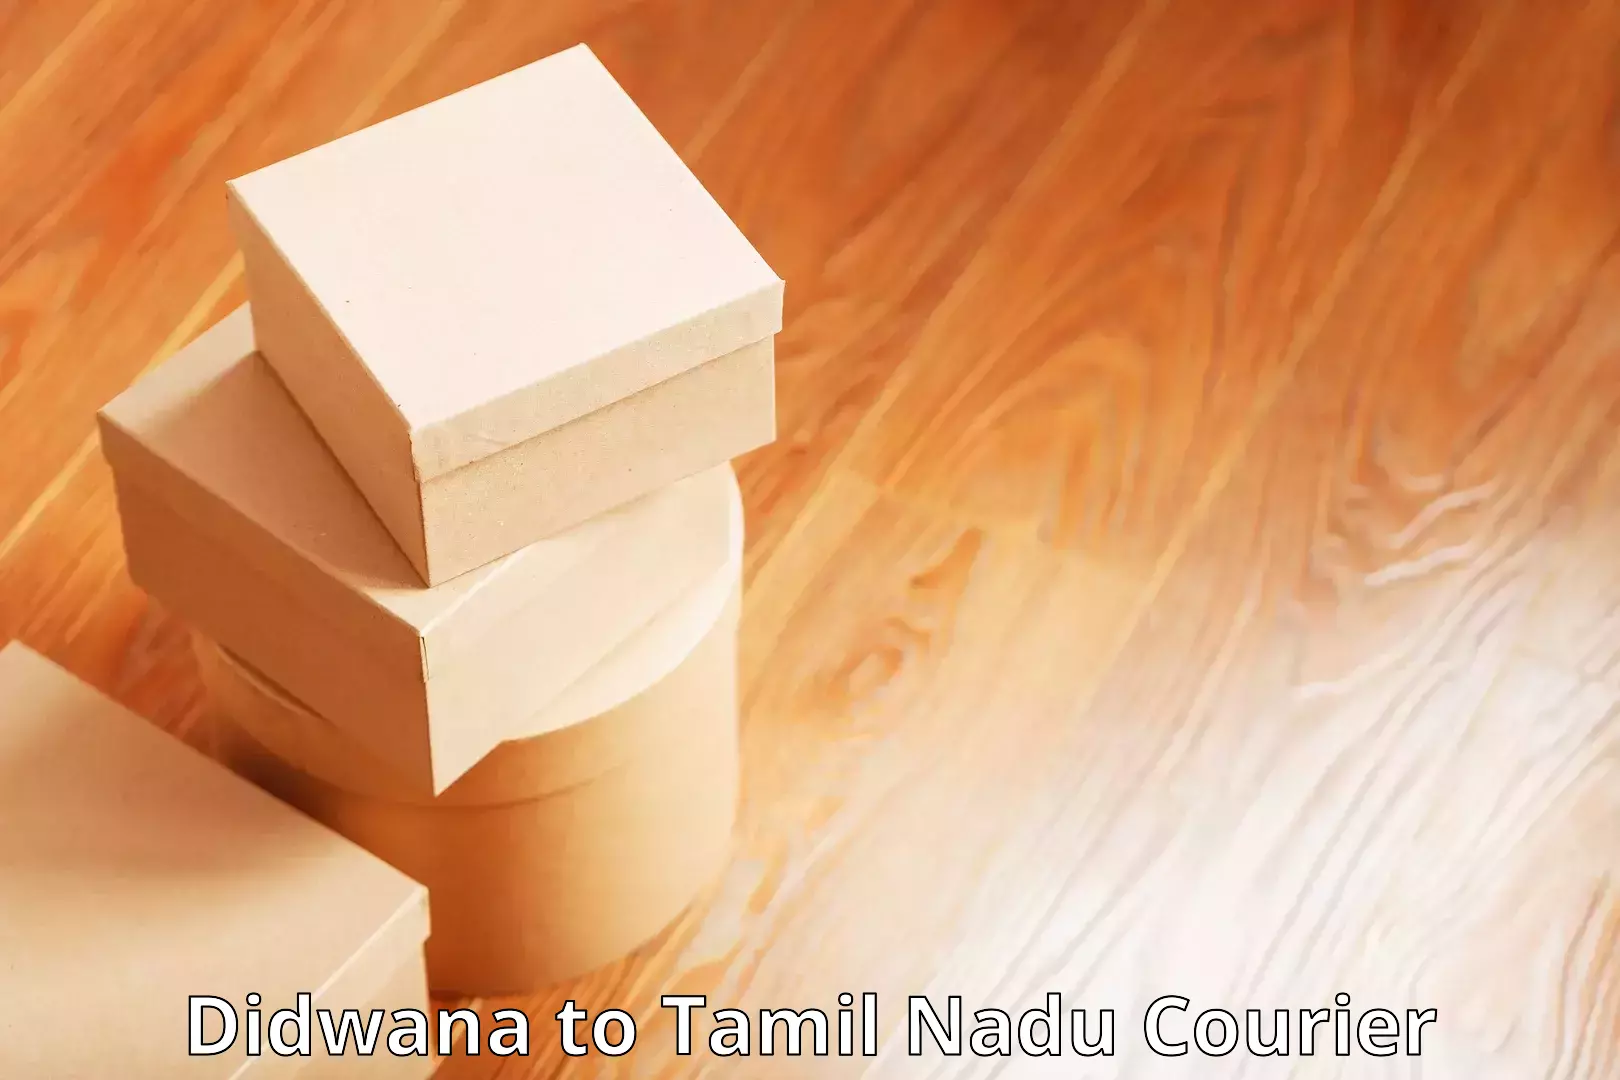 Courier app Didwana to Villupuram